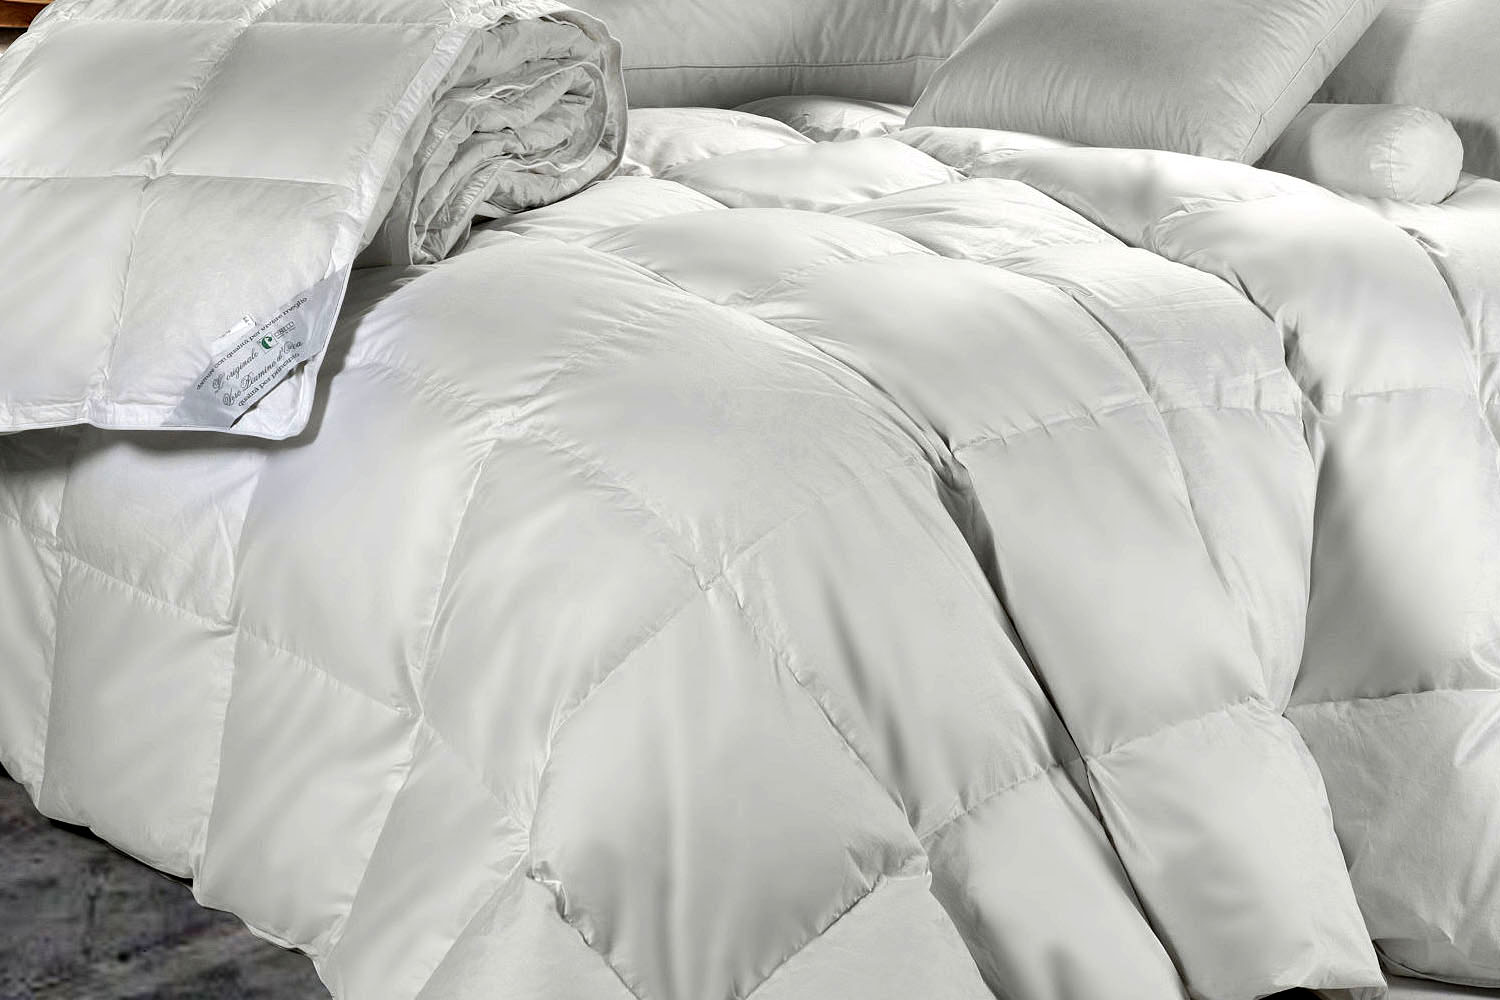 CAM materassi e complementi del letto- Produzione e vendita